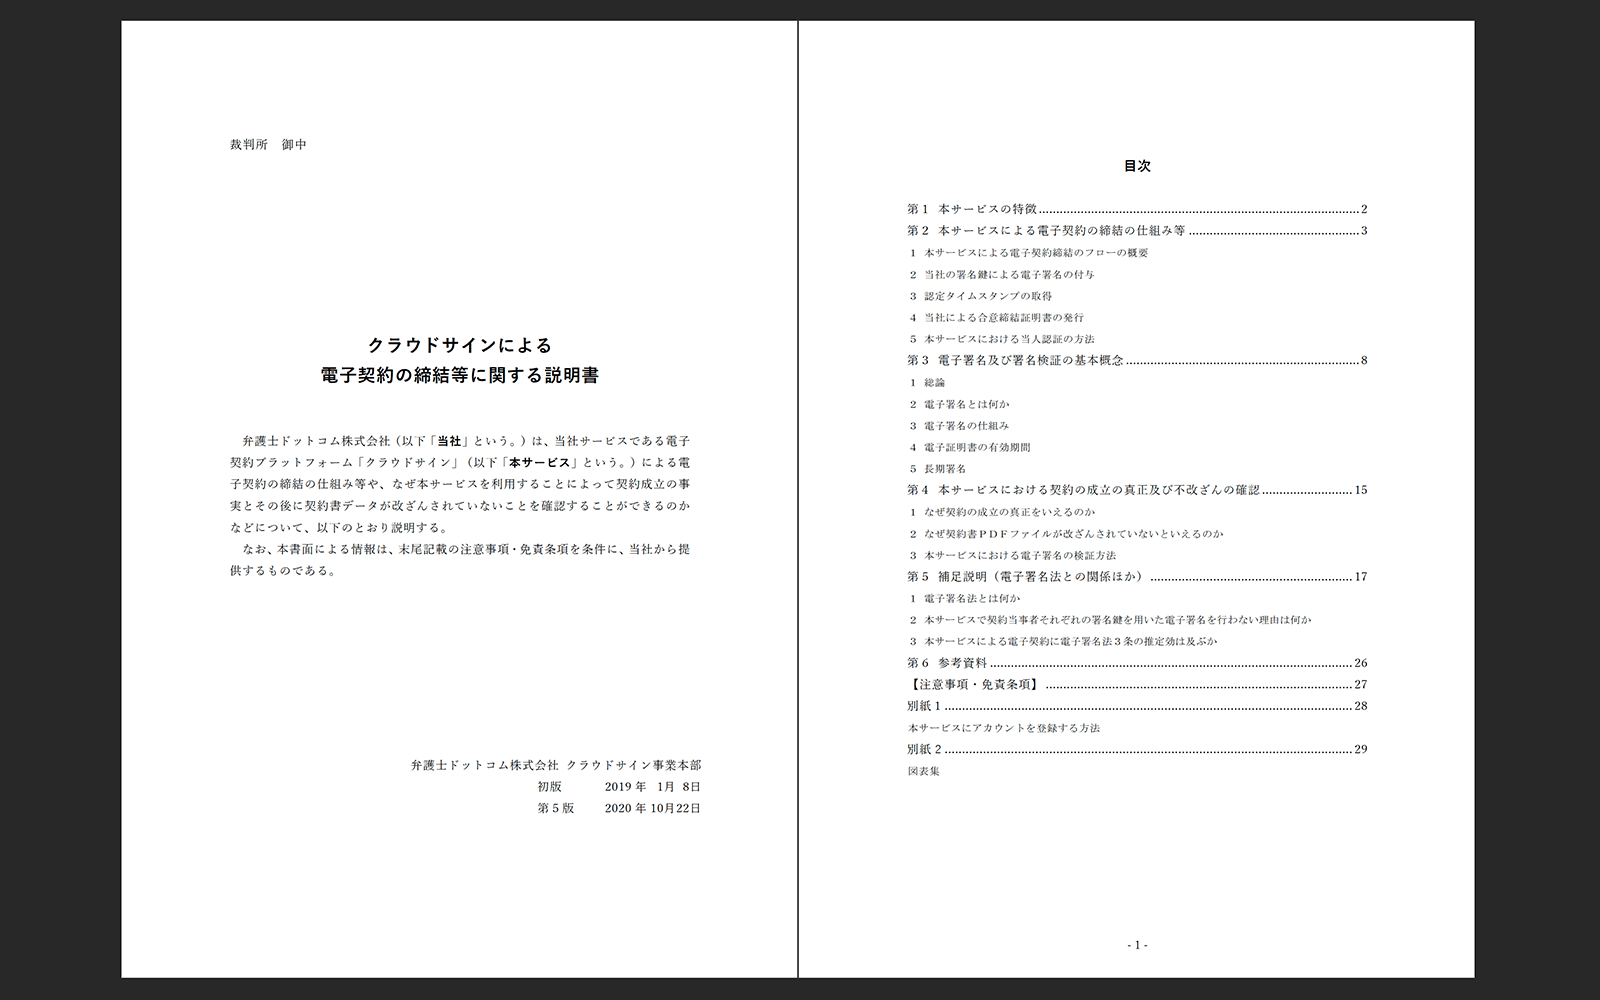 クラウドサイン訴訟サポート資料 https://www.cloudsign.jp/pdf/litigation_support_documents.pdf